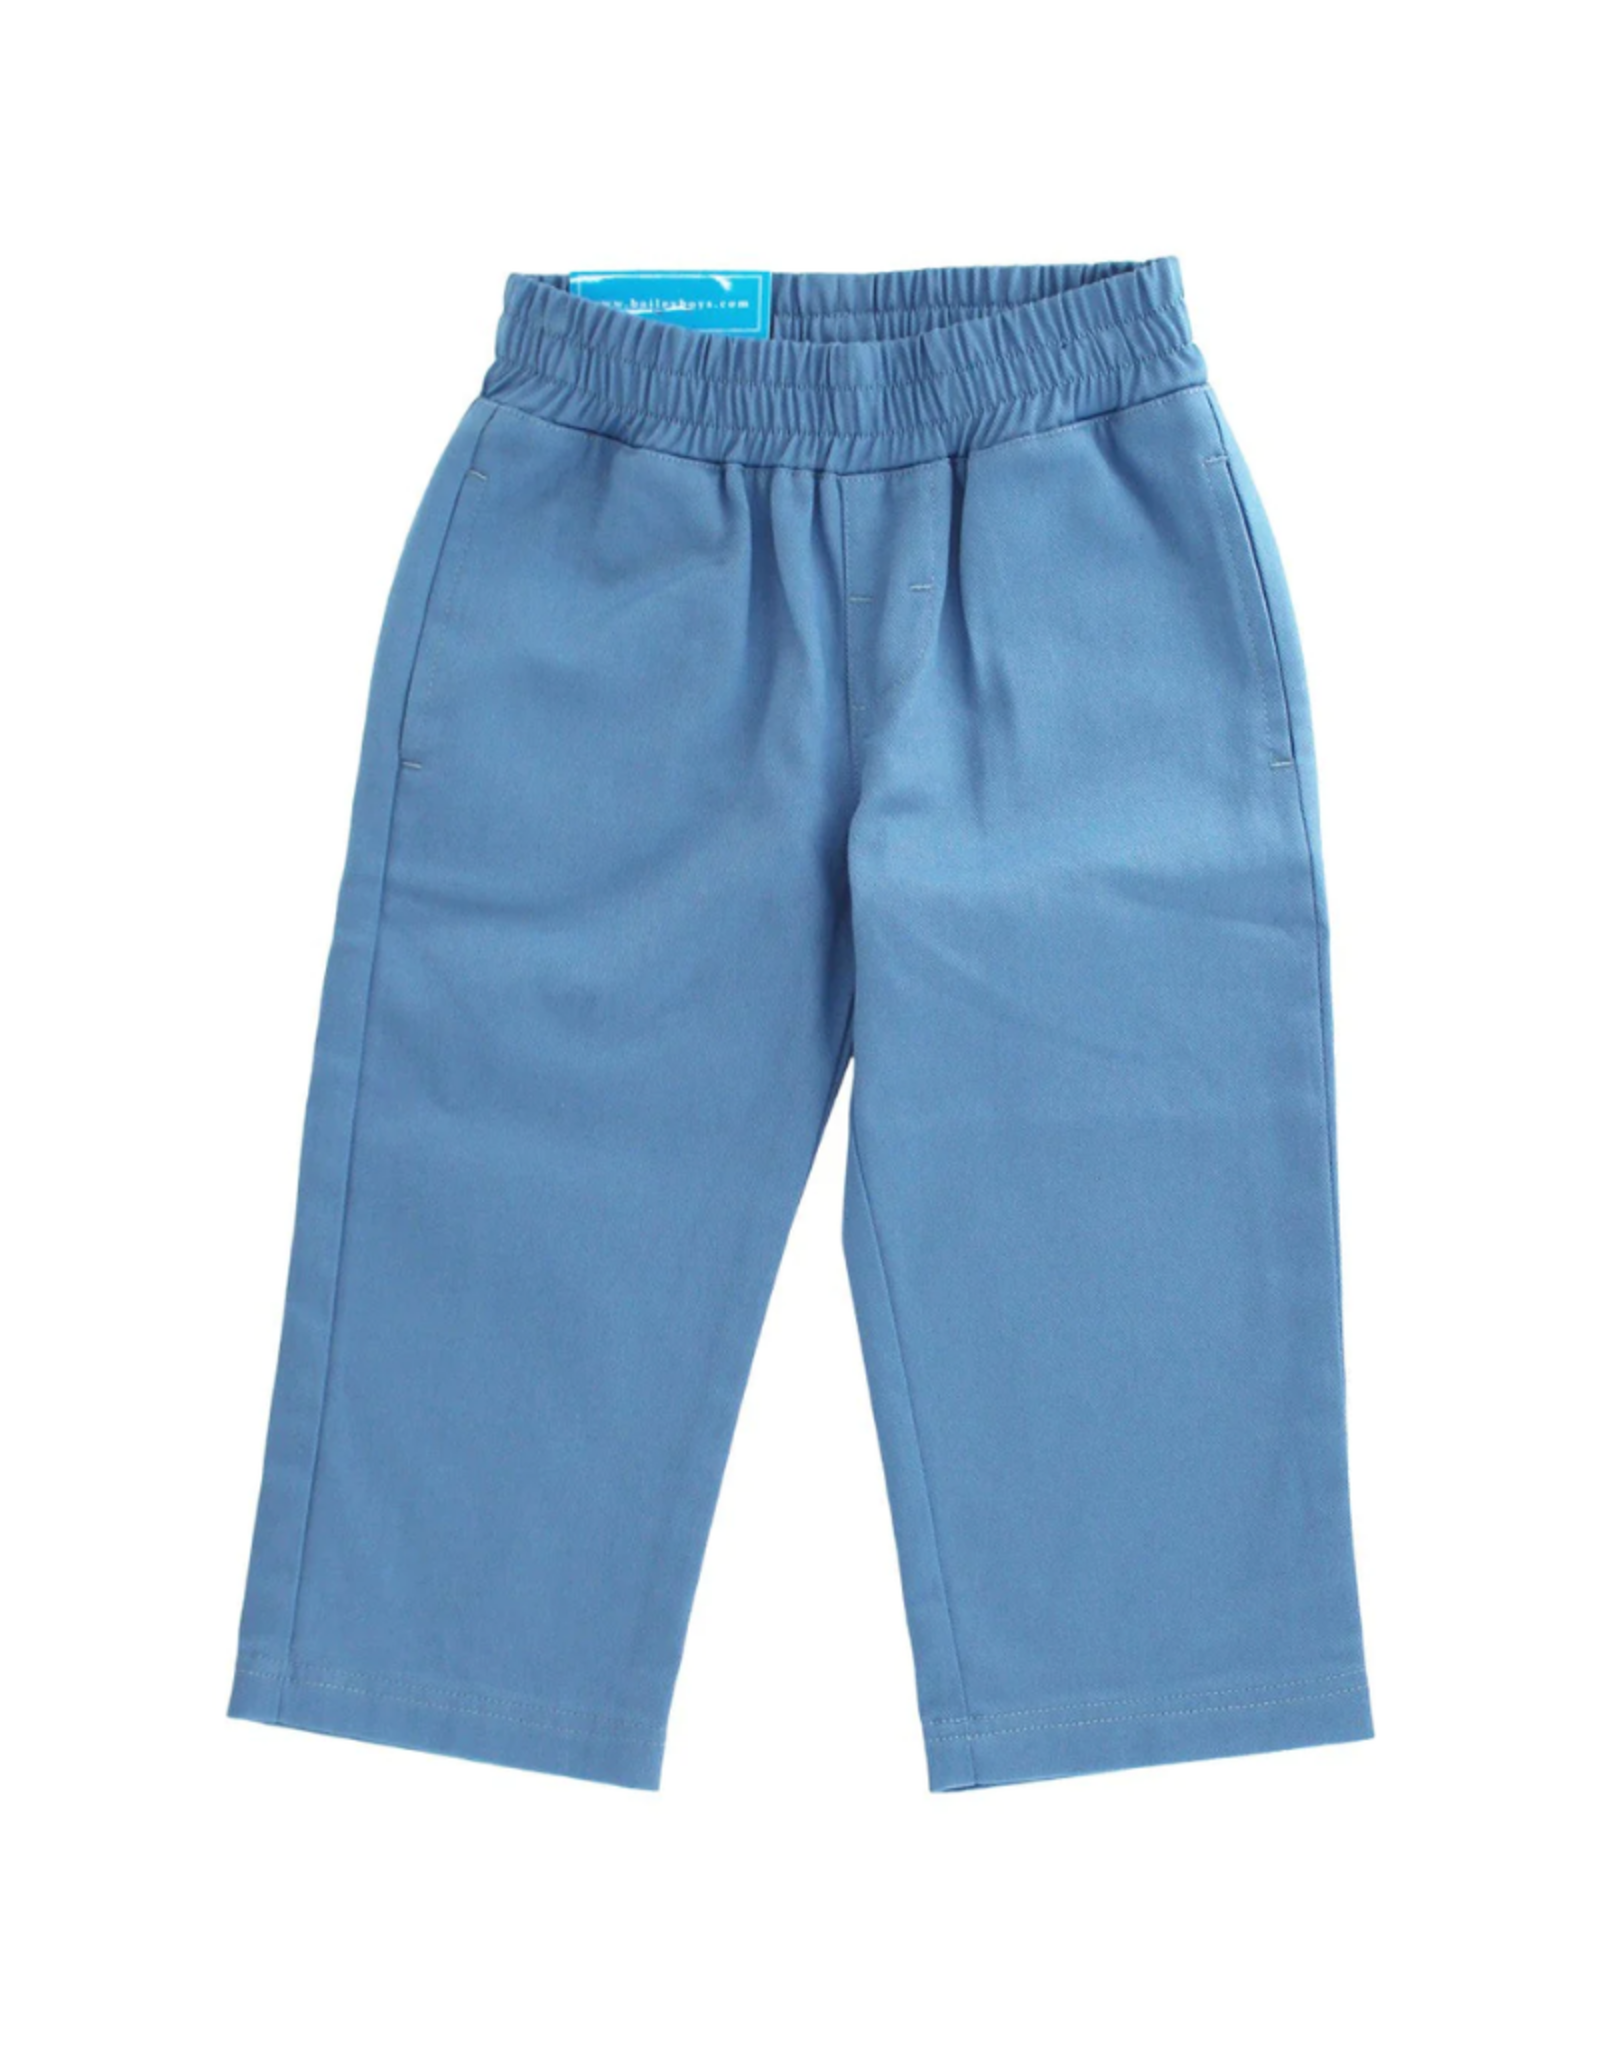 The Bailey Boys Windsor Blue Twill Elastic Pants